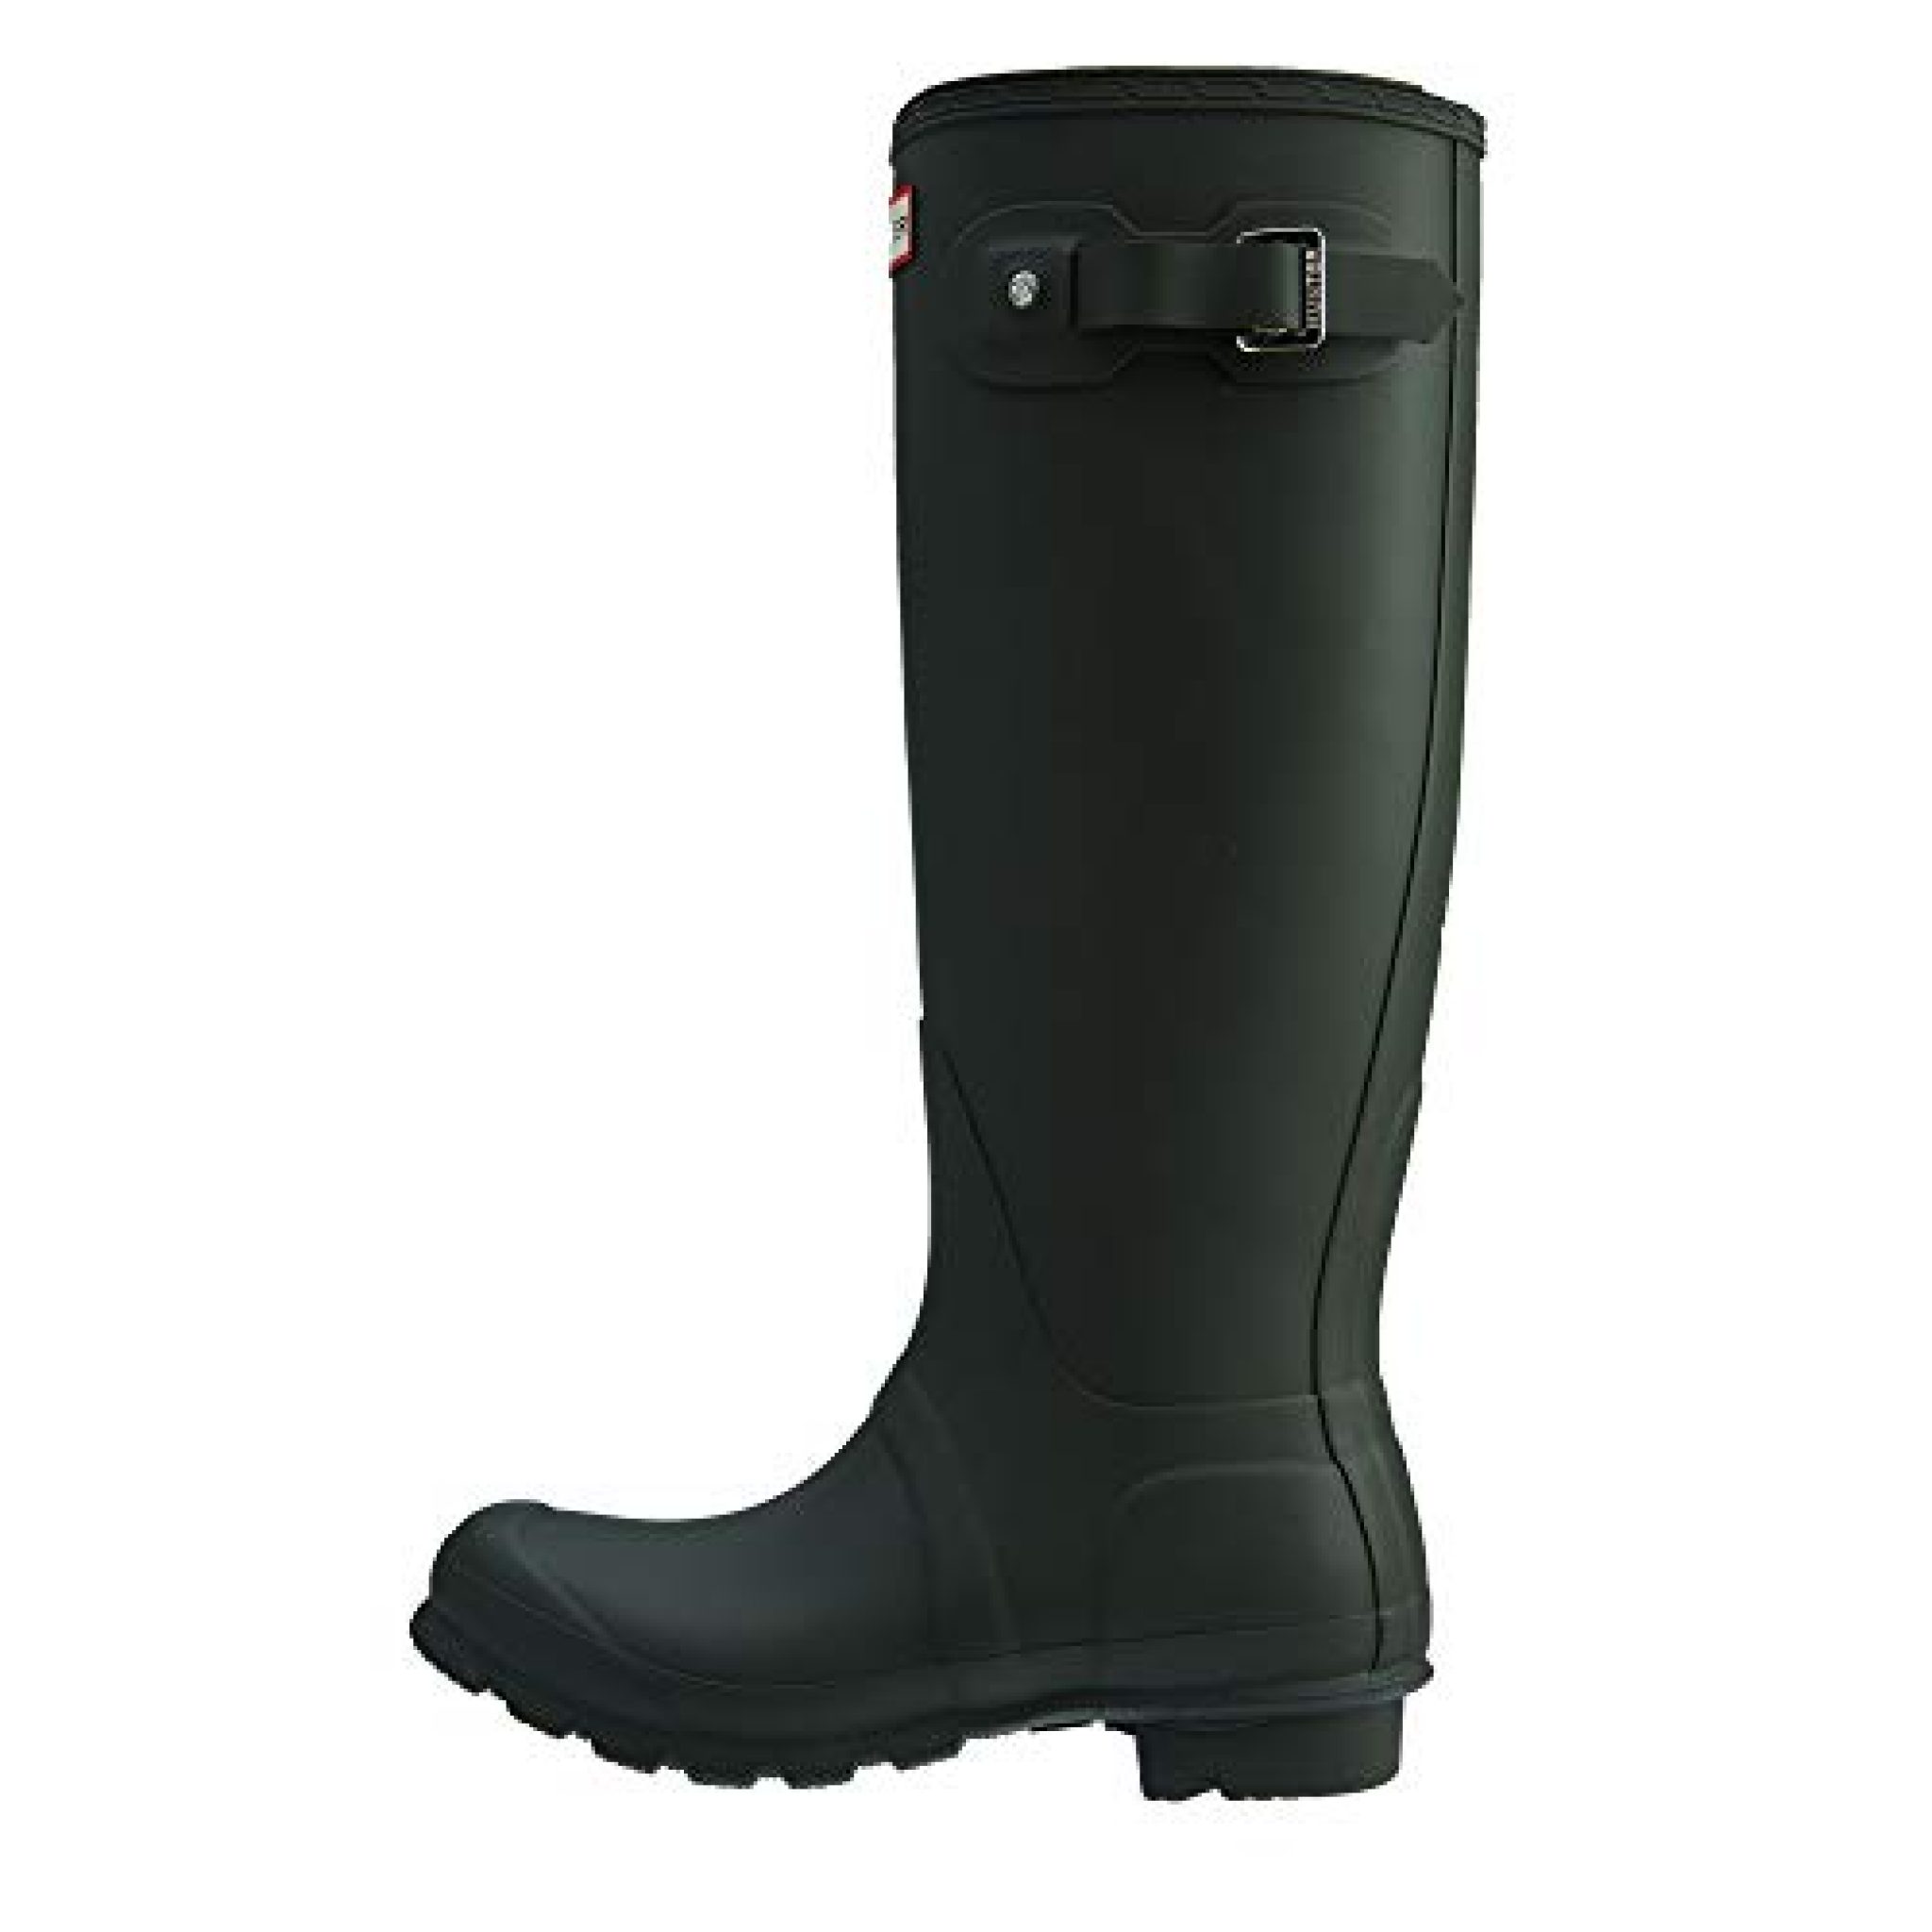 Hunters Women's Original Tall Rain Boots, Dark Olive, Size 8 — Deals ...